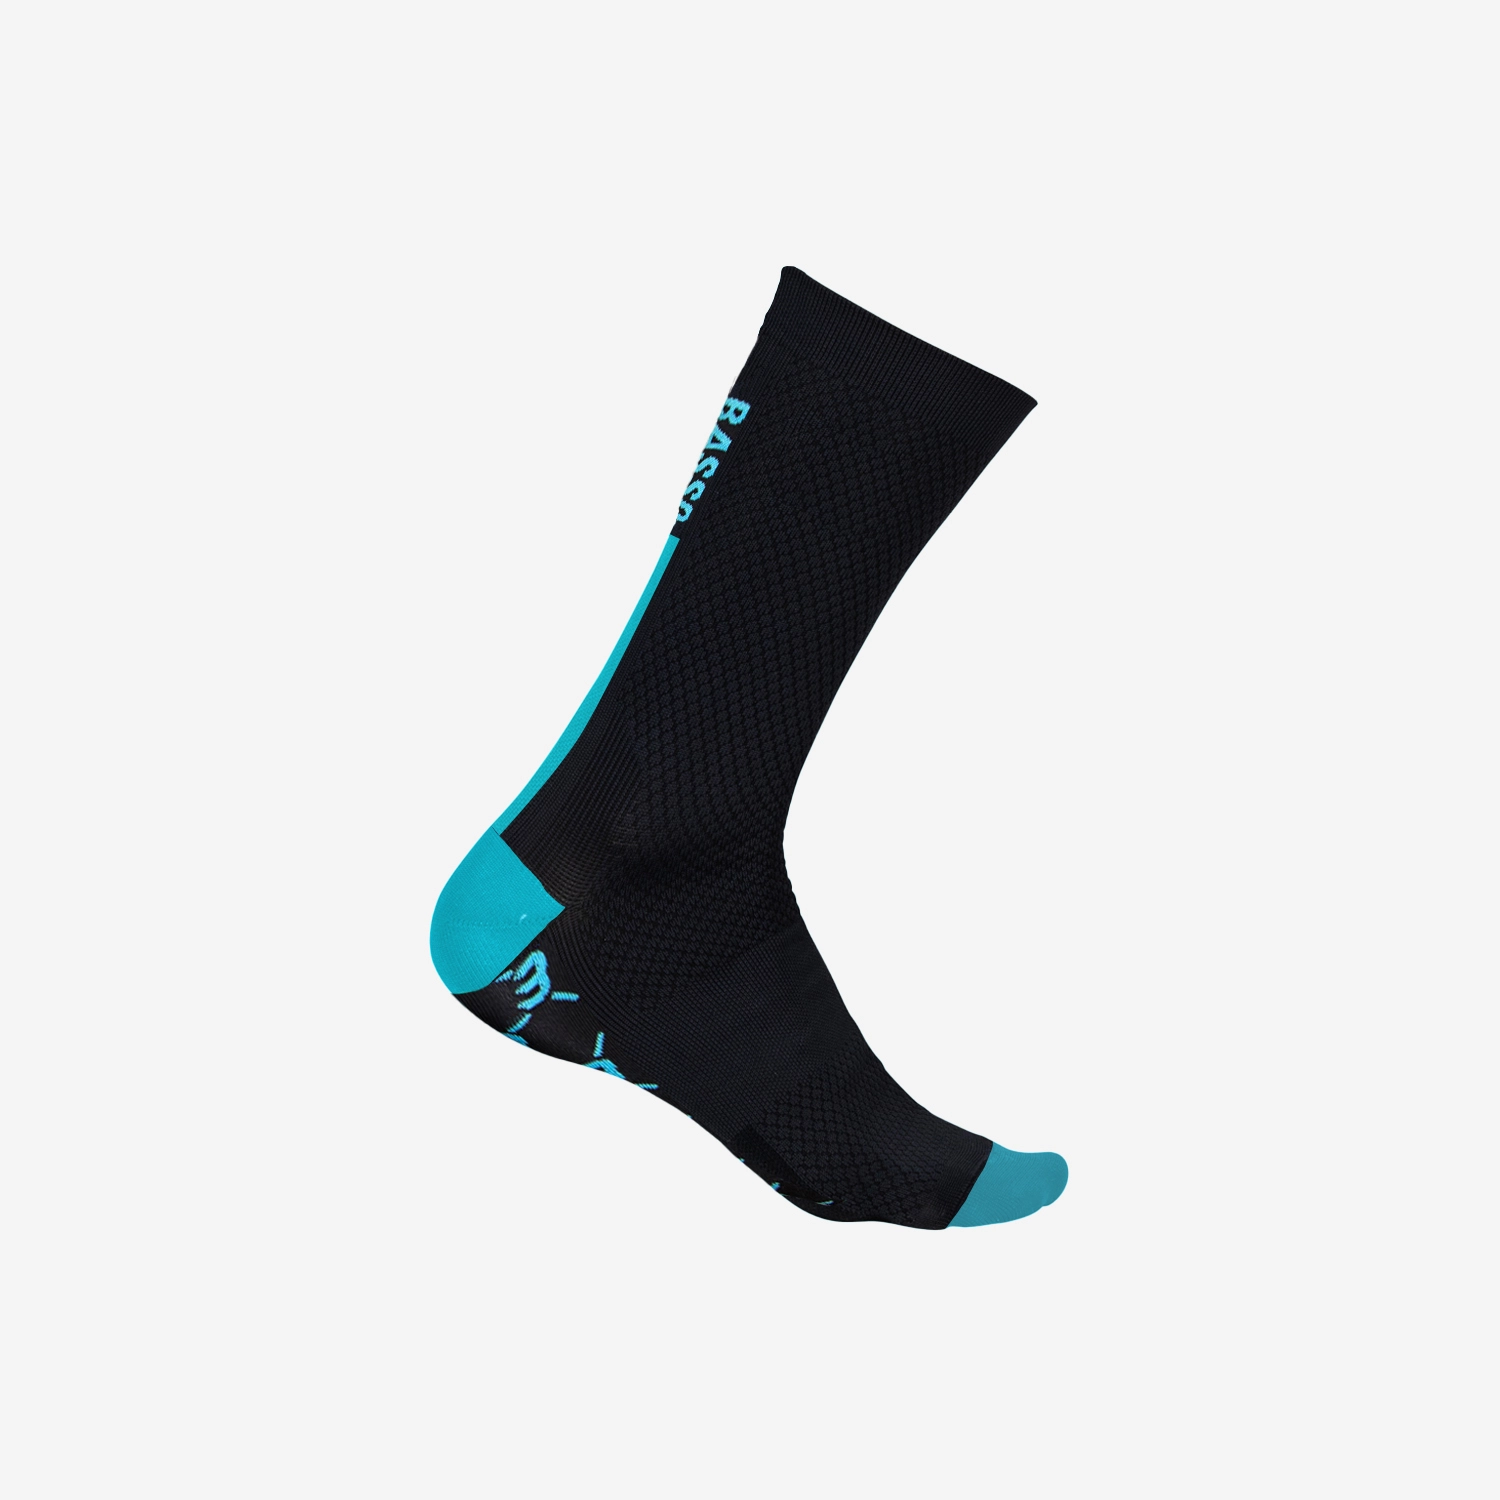 Hi-Calf Race Socks